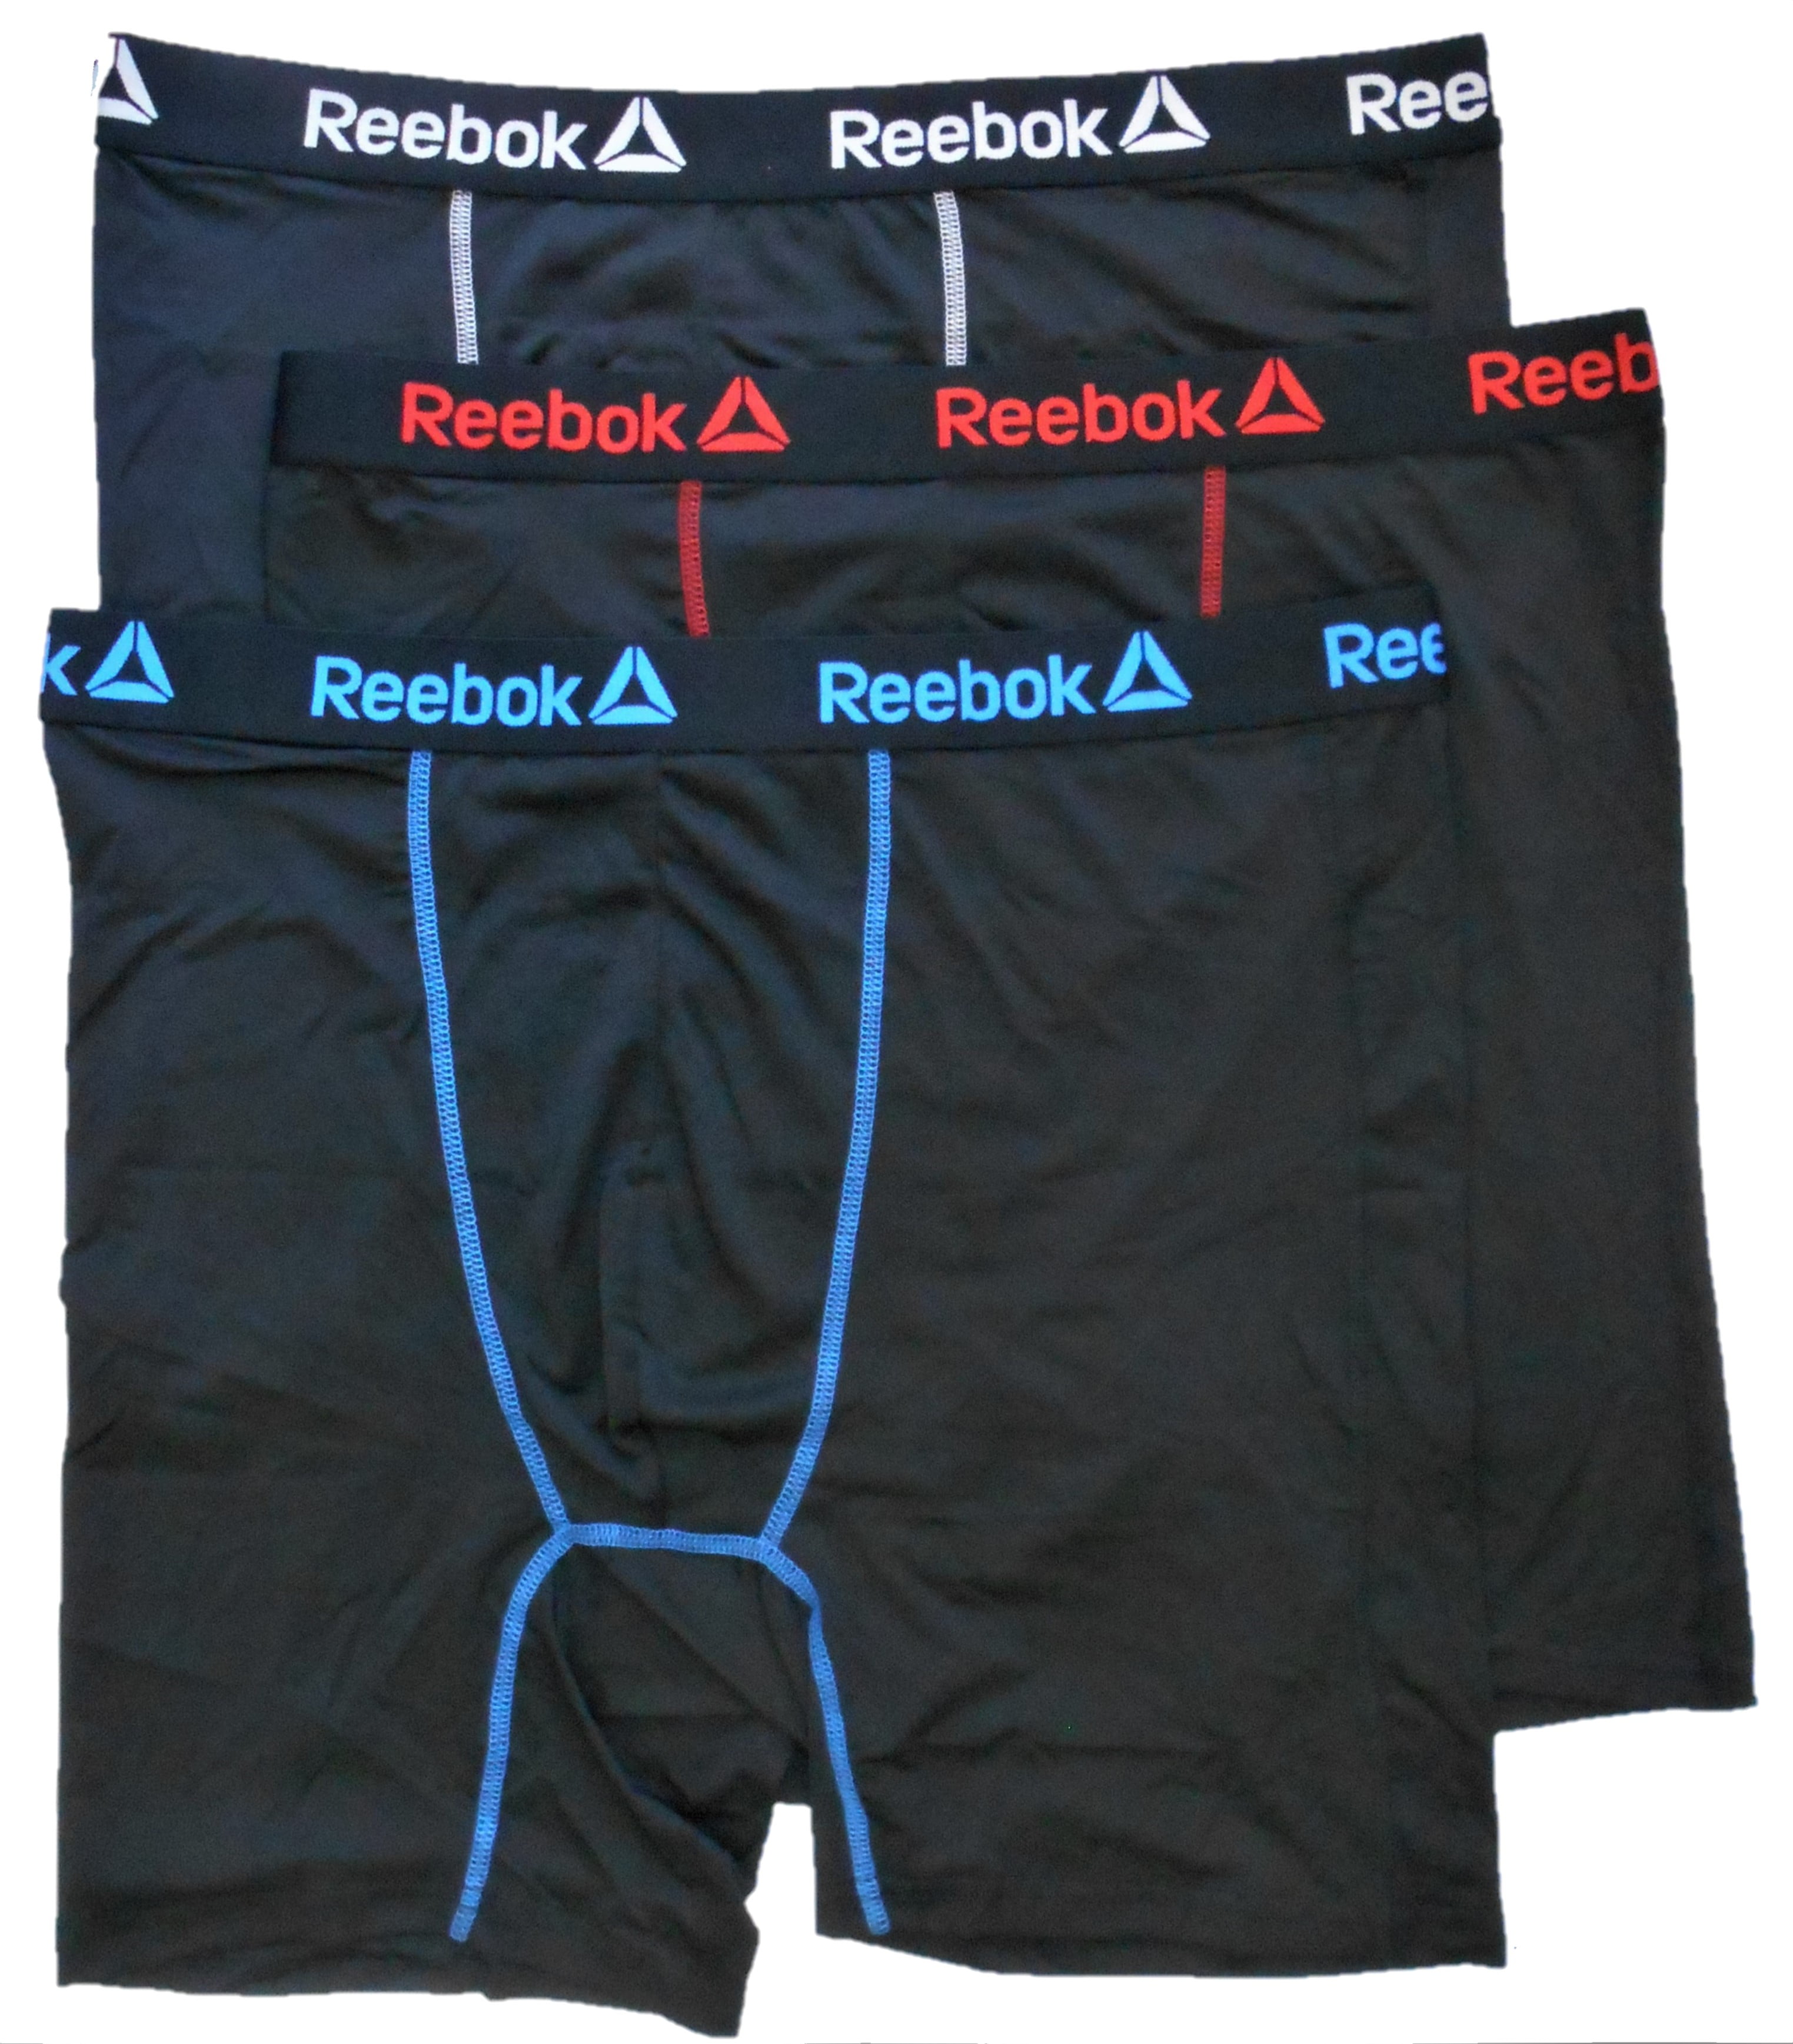 buy reebok underwear